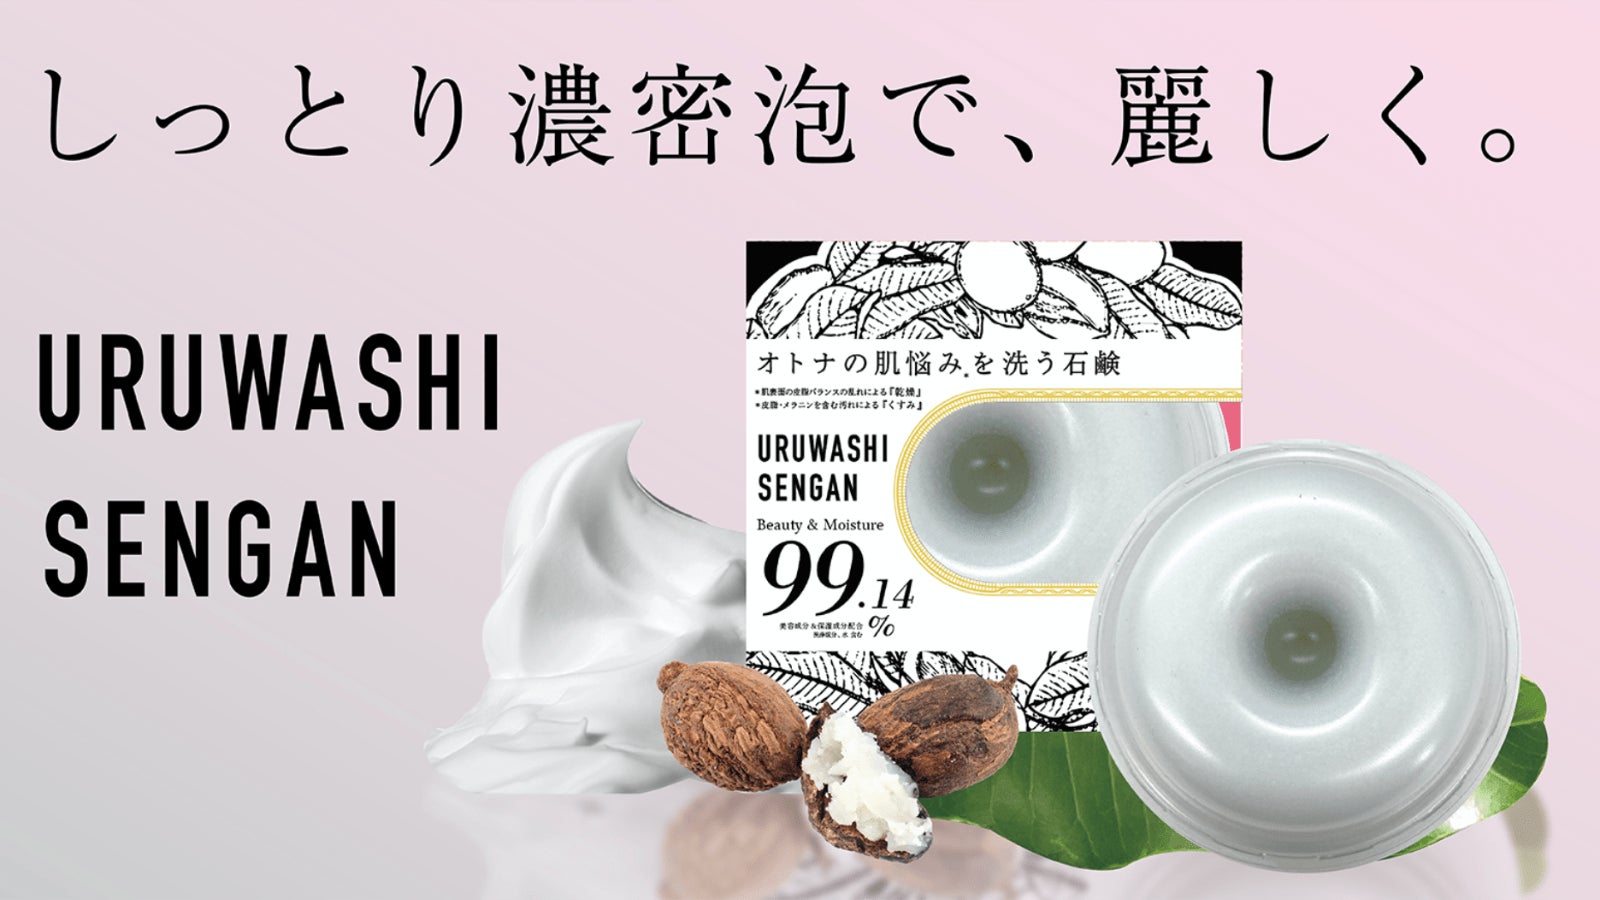 潤い濃密泡石鹸『URUWASHI SENGAN』が新登場！自社初の製法で「泡立ち」と「潤い感」の両立を実現